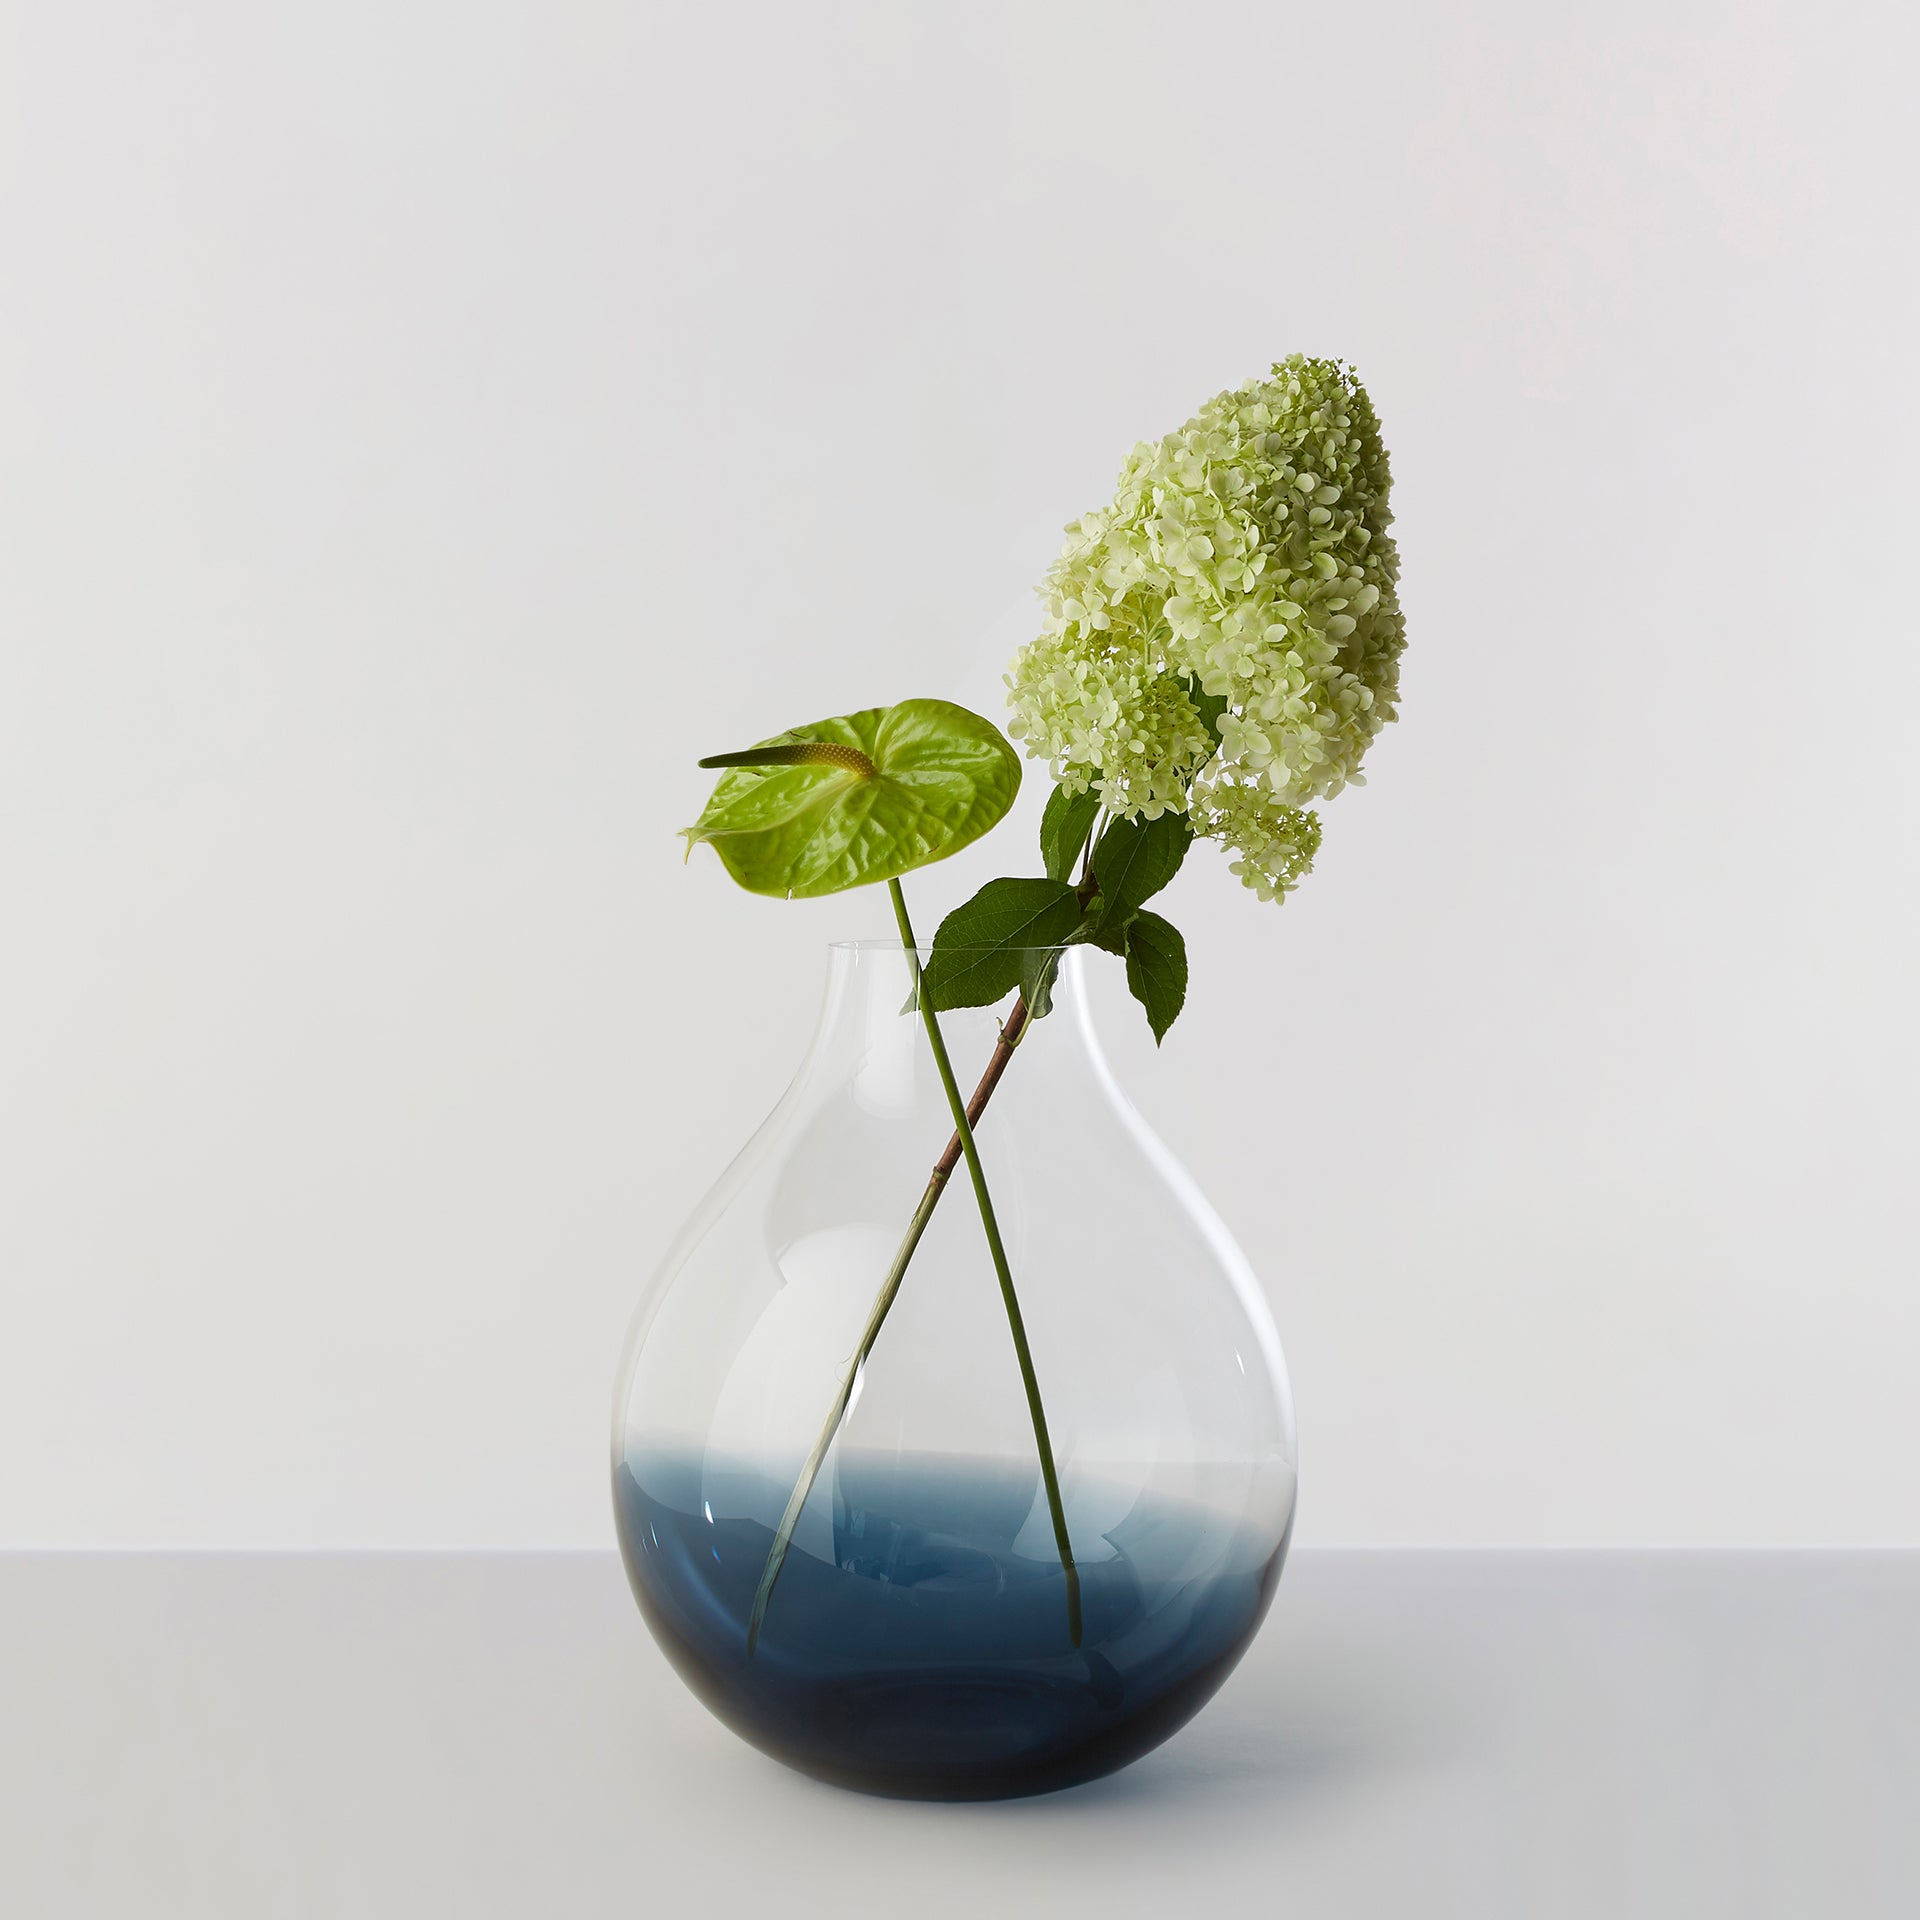 Billede af Flower Vase no. 24 - Indigo blue